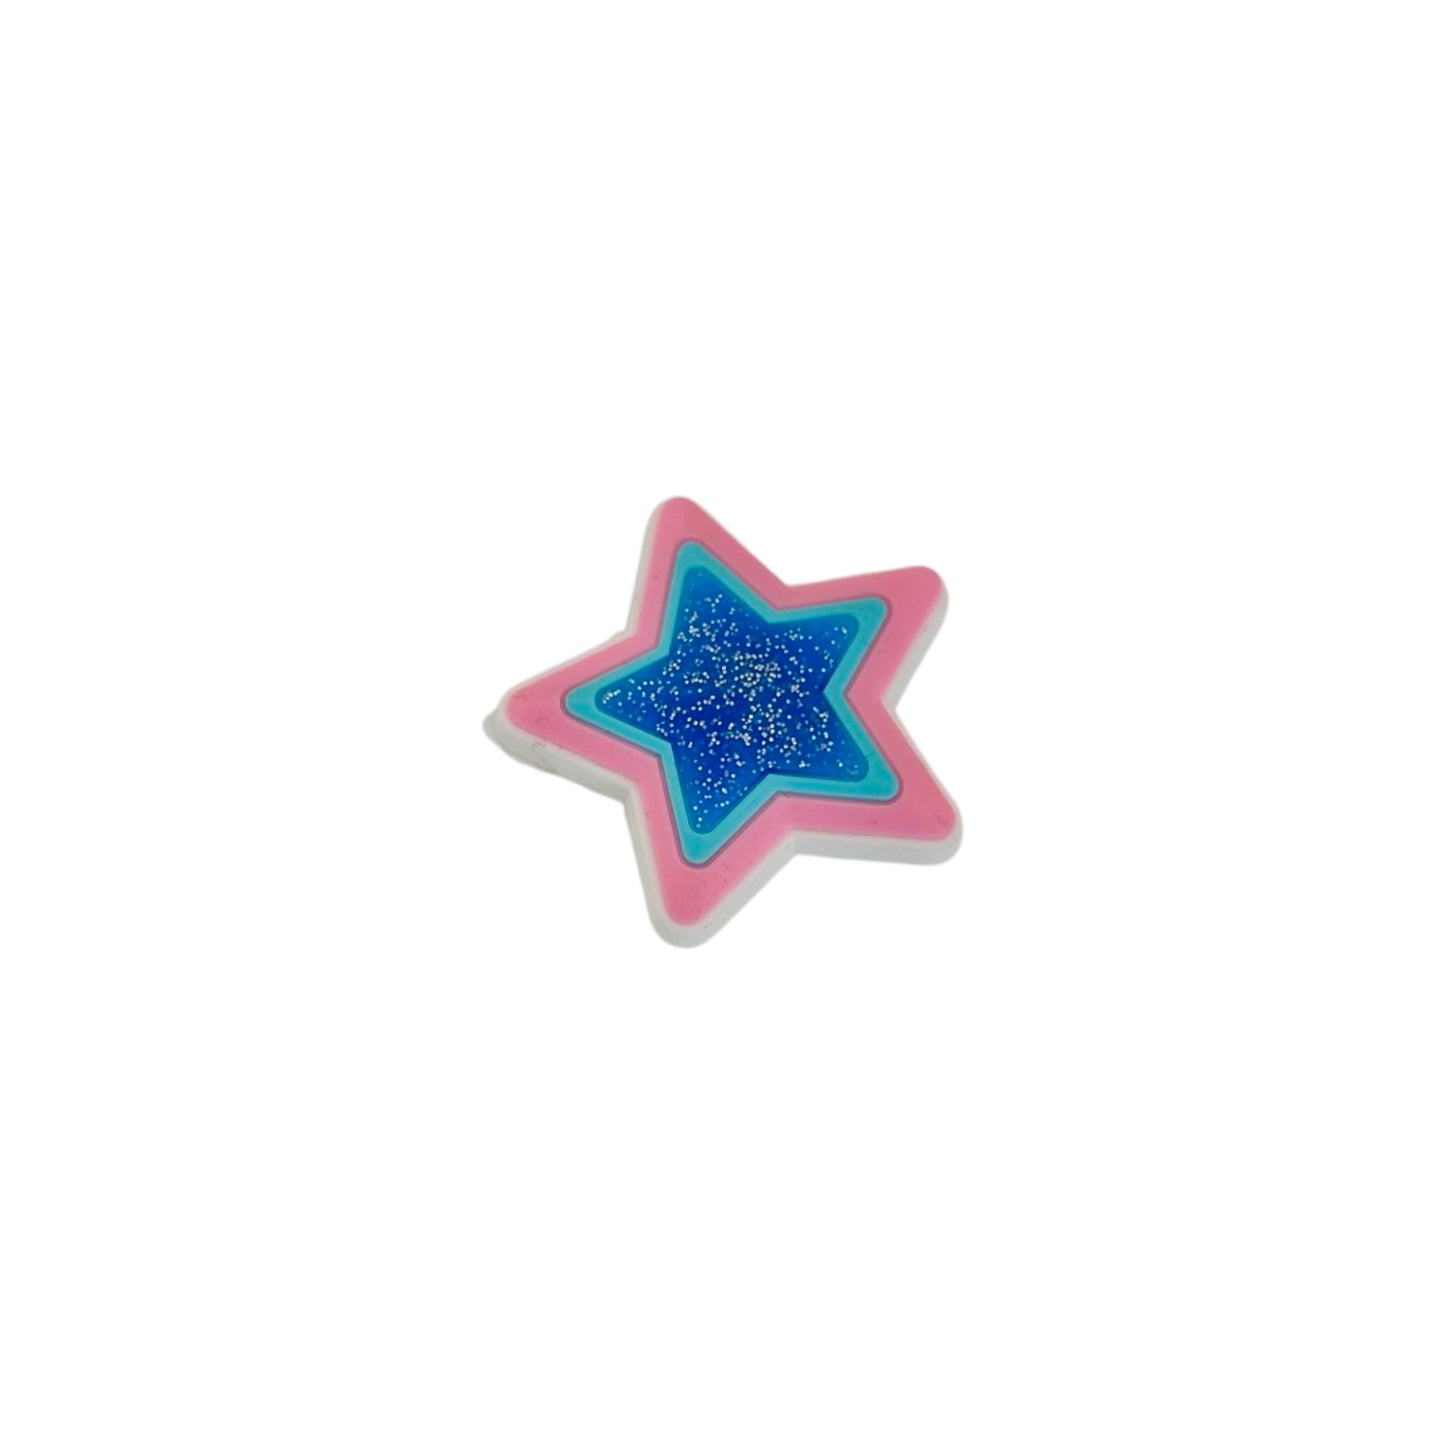 Bling Charm - GLITTER STAR PINK